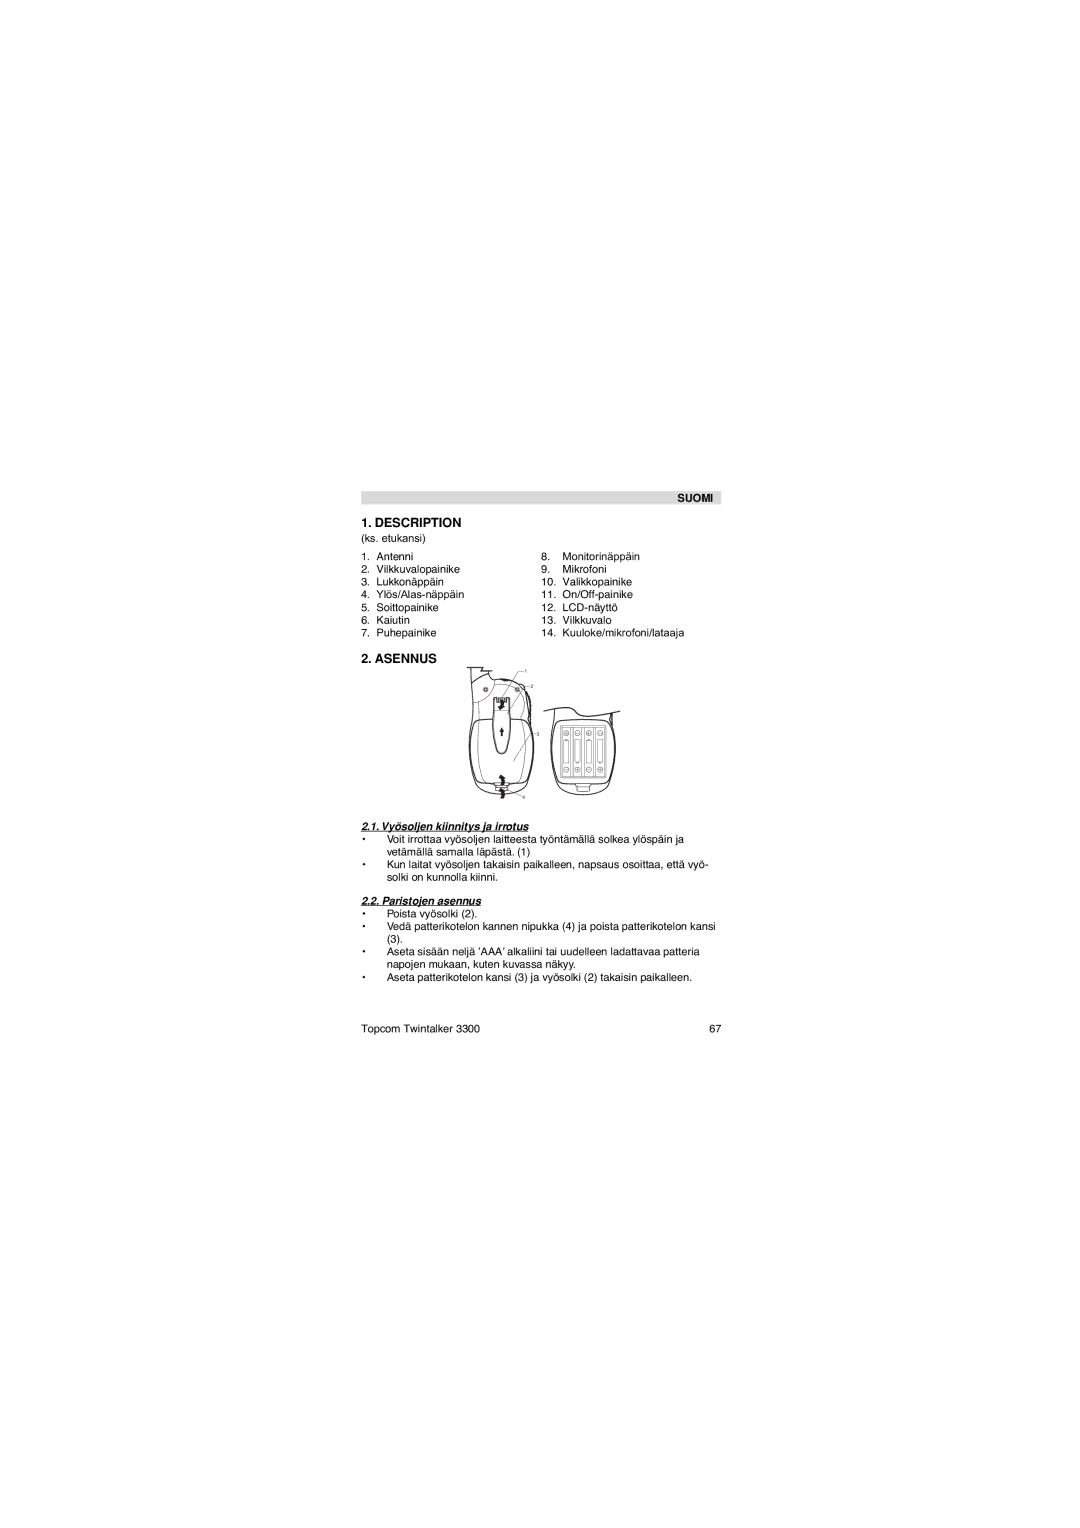 Topcom 3300 user manual Asennus, Vyösoljen kiinnitys ja irrotus, Paristojen asennus 